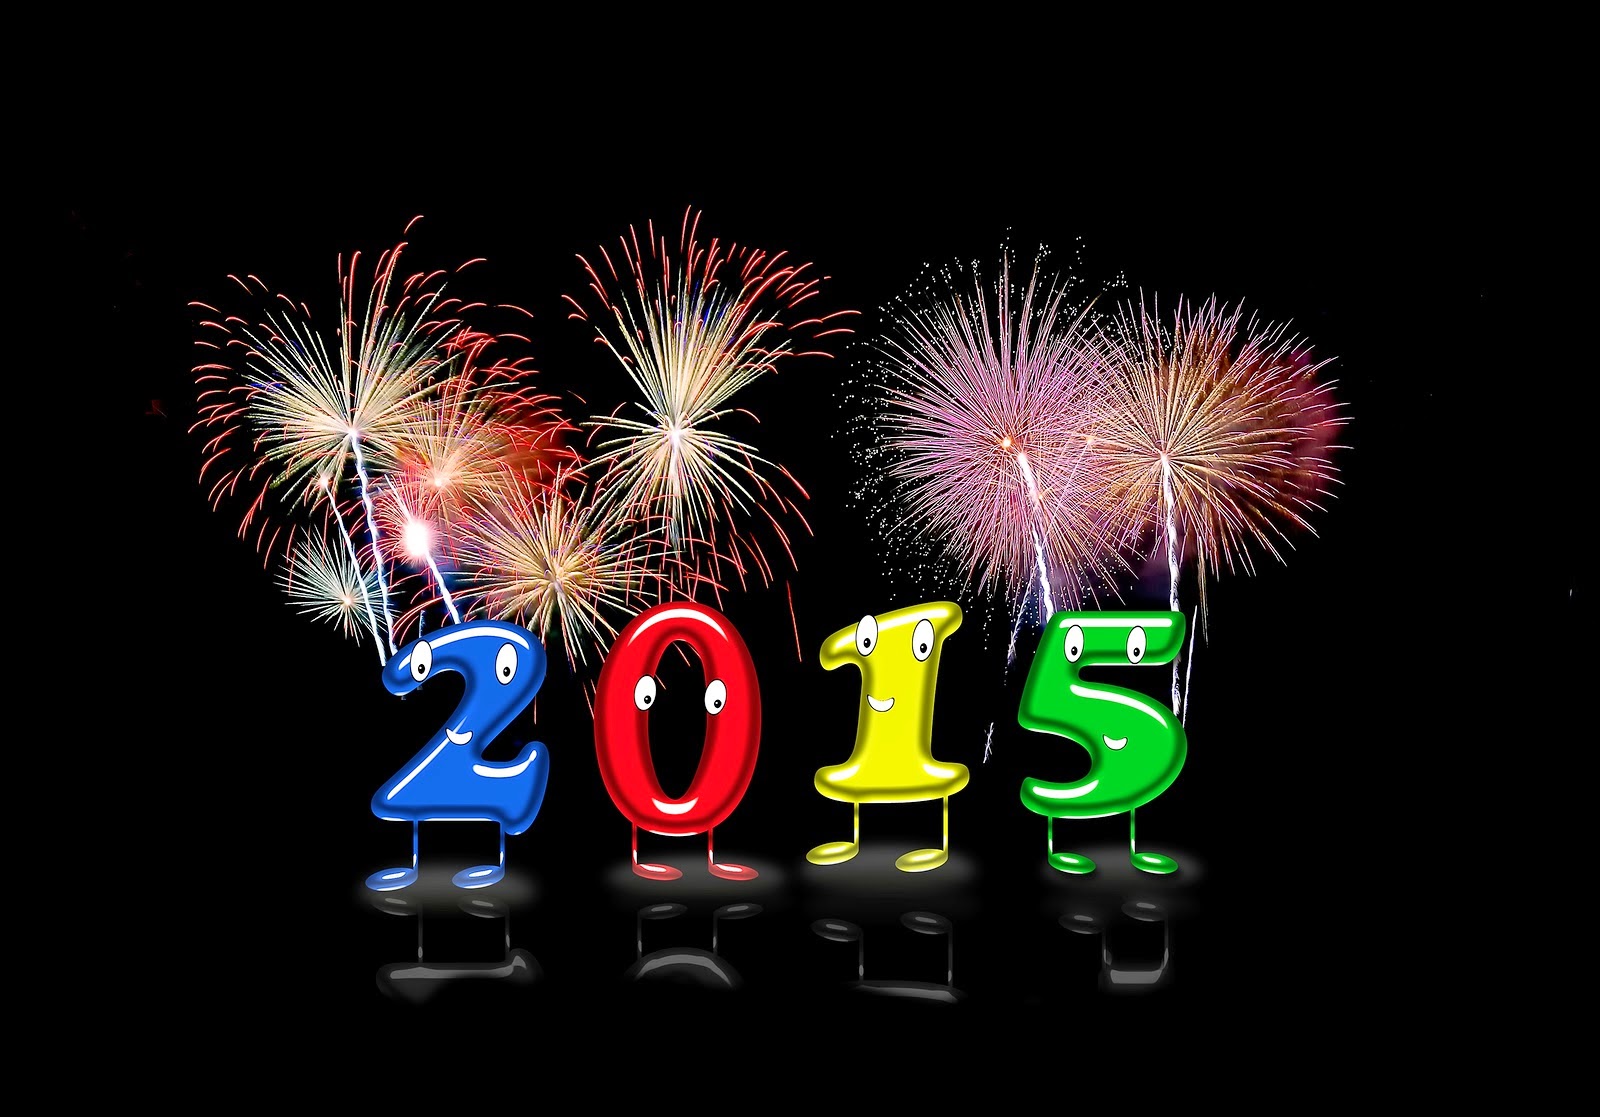 Gambar Ucapan Selamat Tahun Baru 2015 Kata Happy New Year 2015